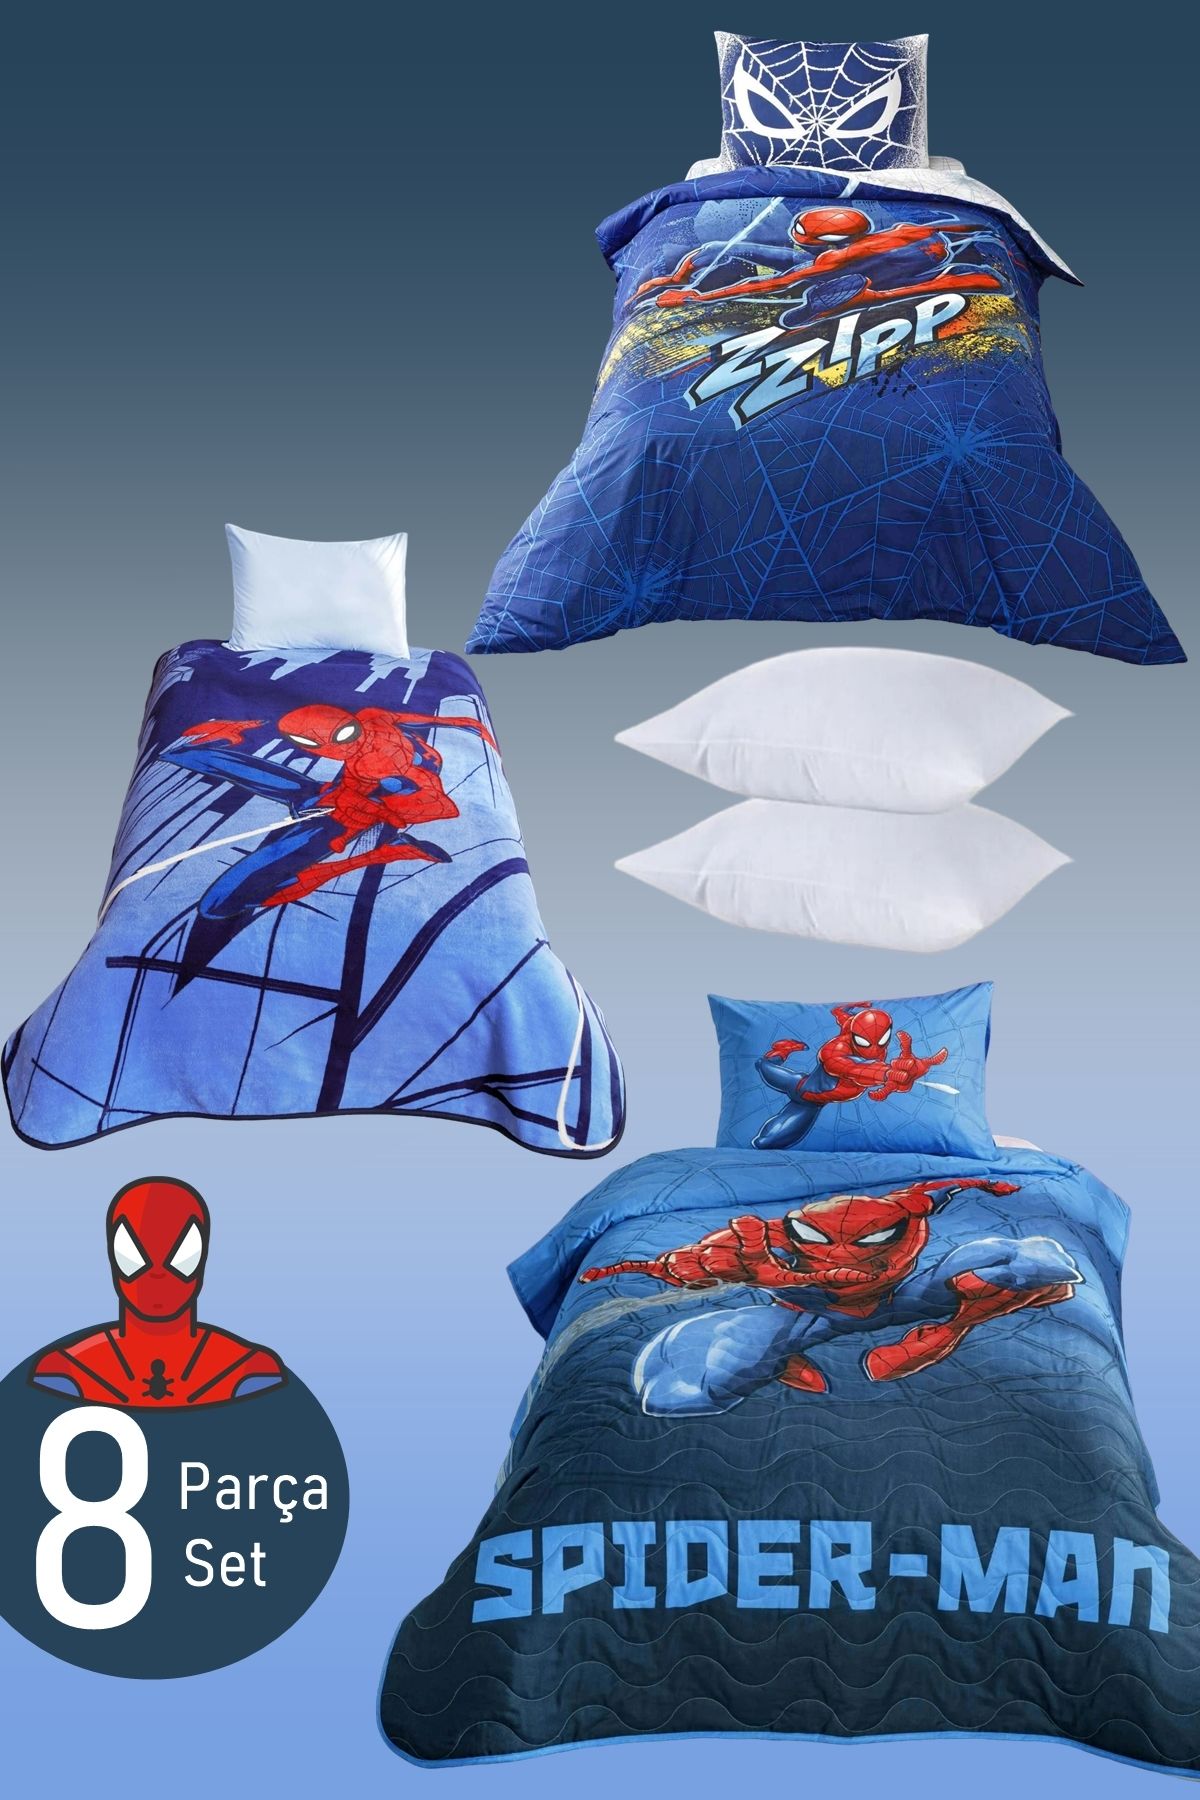 Taç Spiderman 8 Parça Set Uyku Seti - Nevresim Takımı + Yatak Örtüsü + Battaniye + İkili Yastık